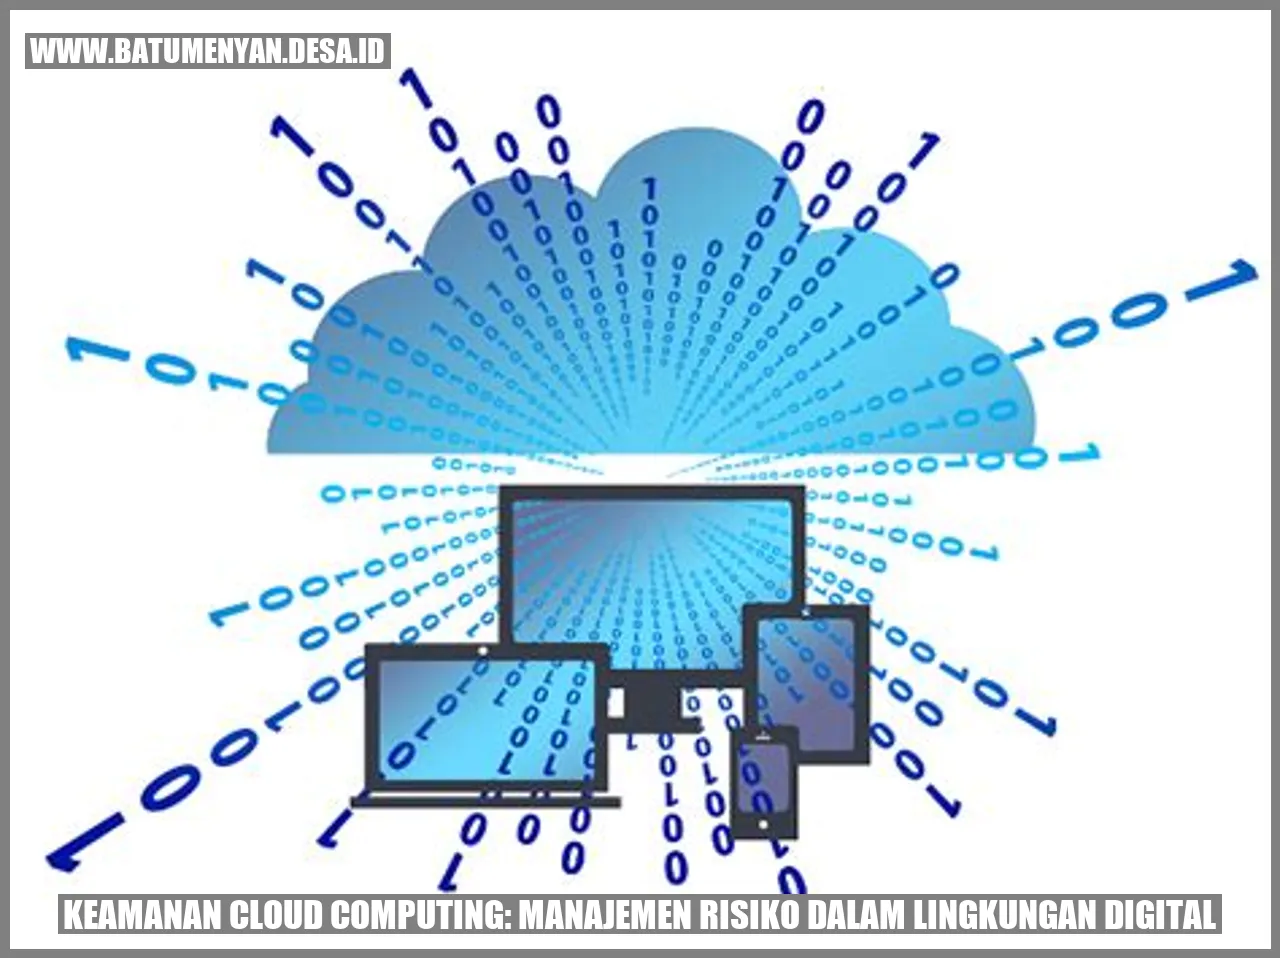 Keamanan Cloud Computing: Manajemen Risiko dalam Lingkungan Digital